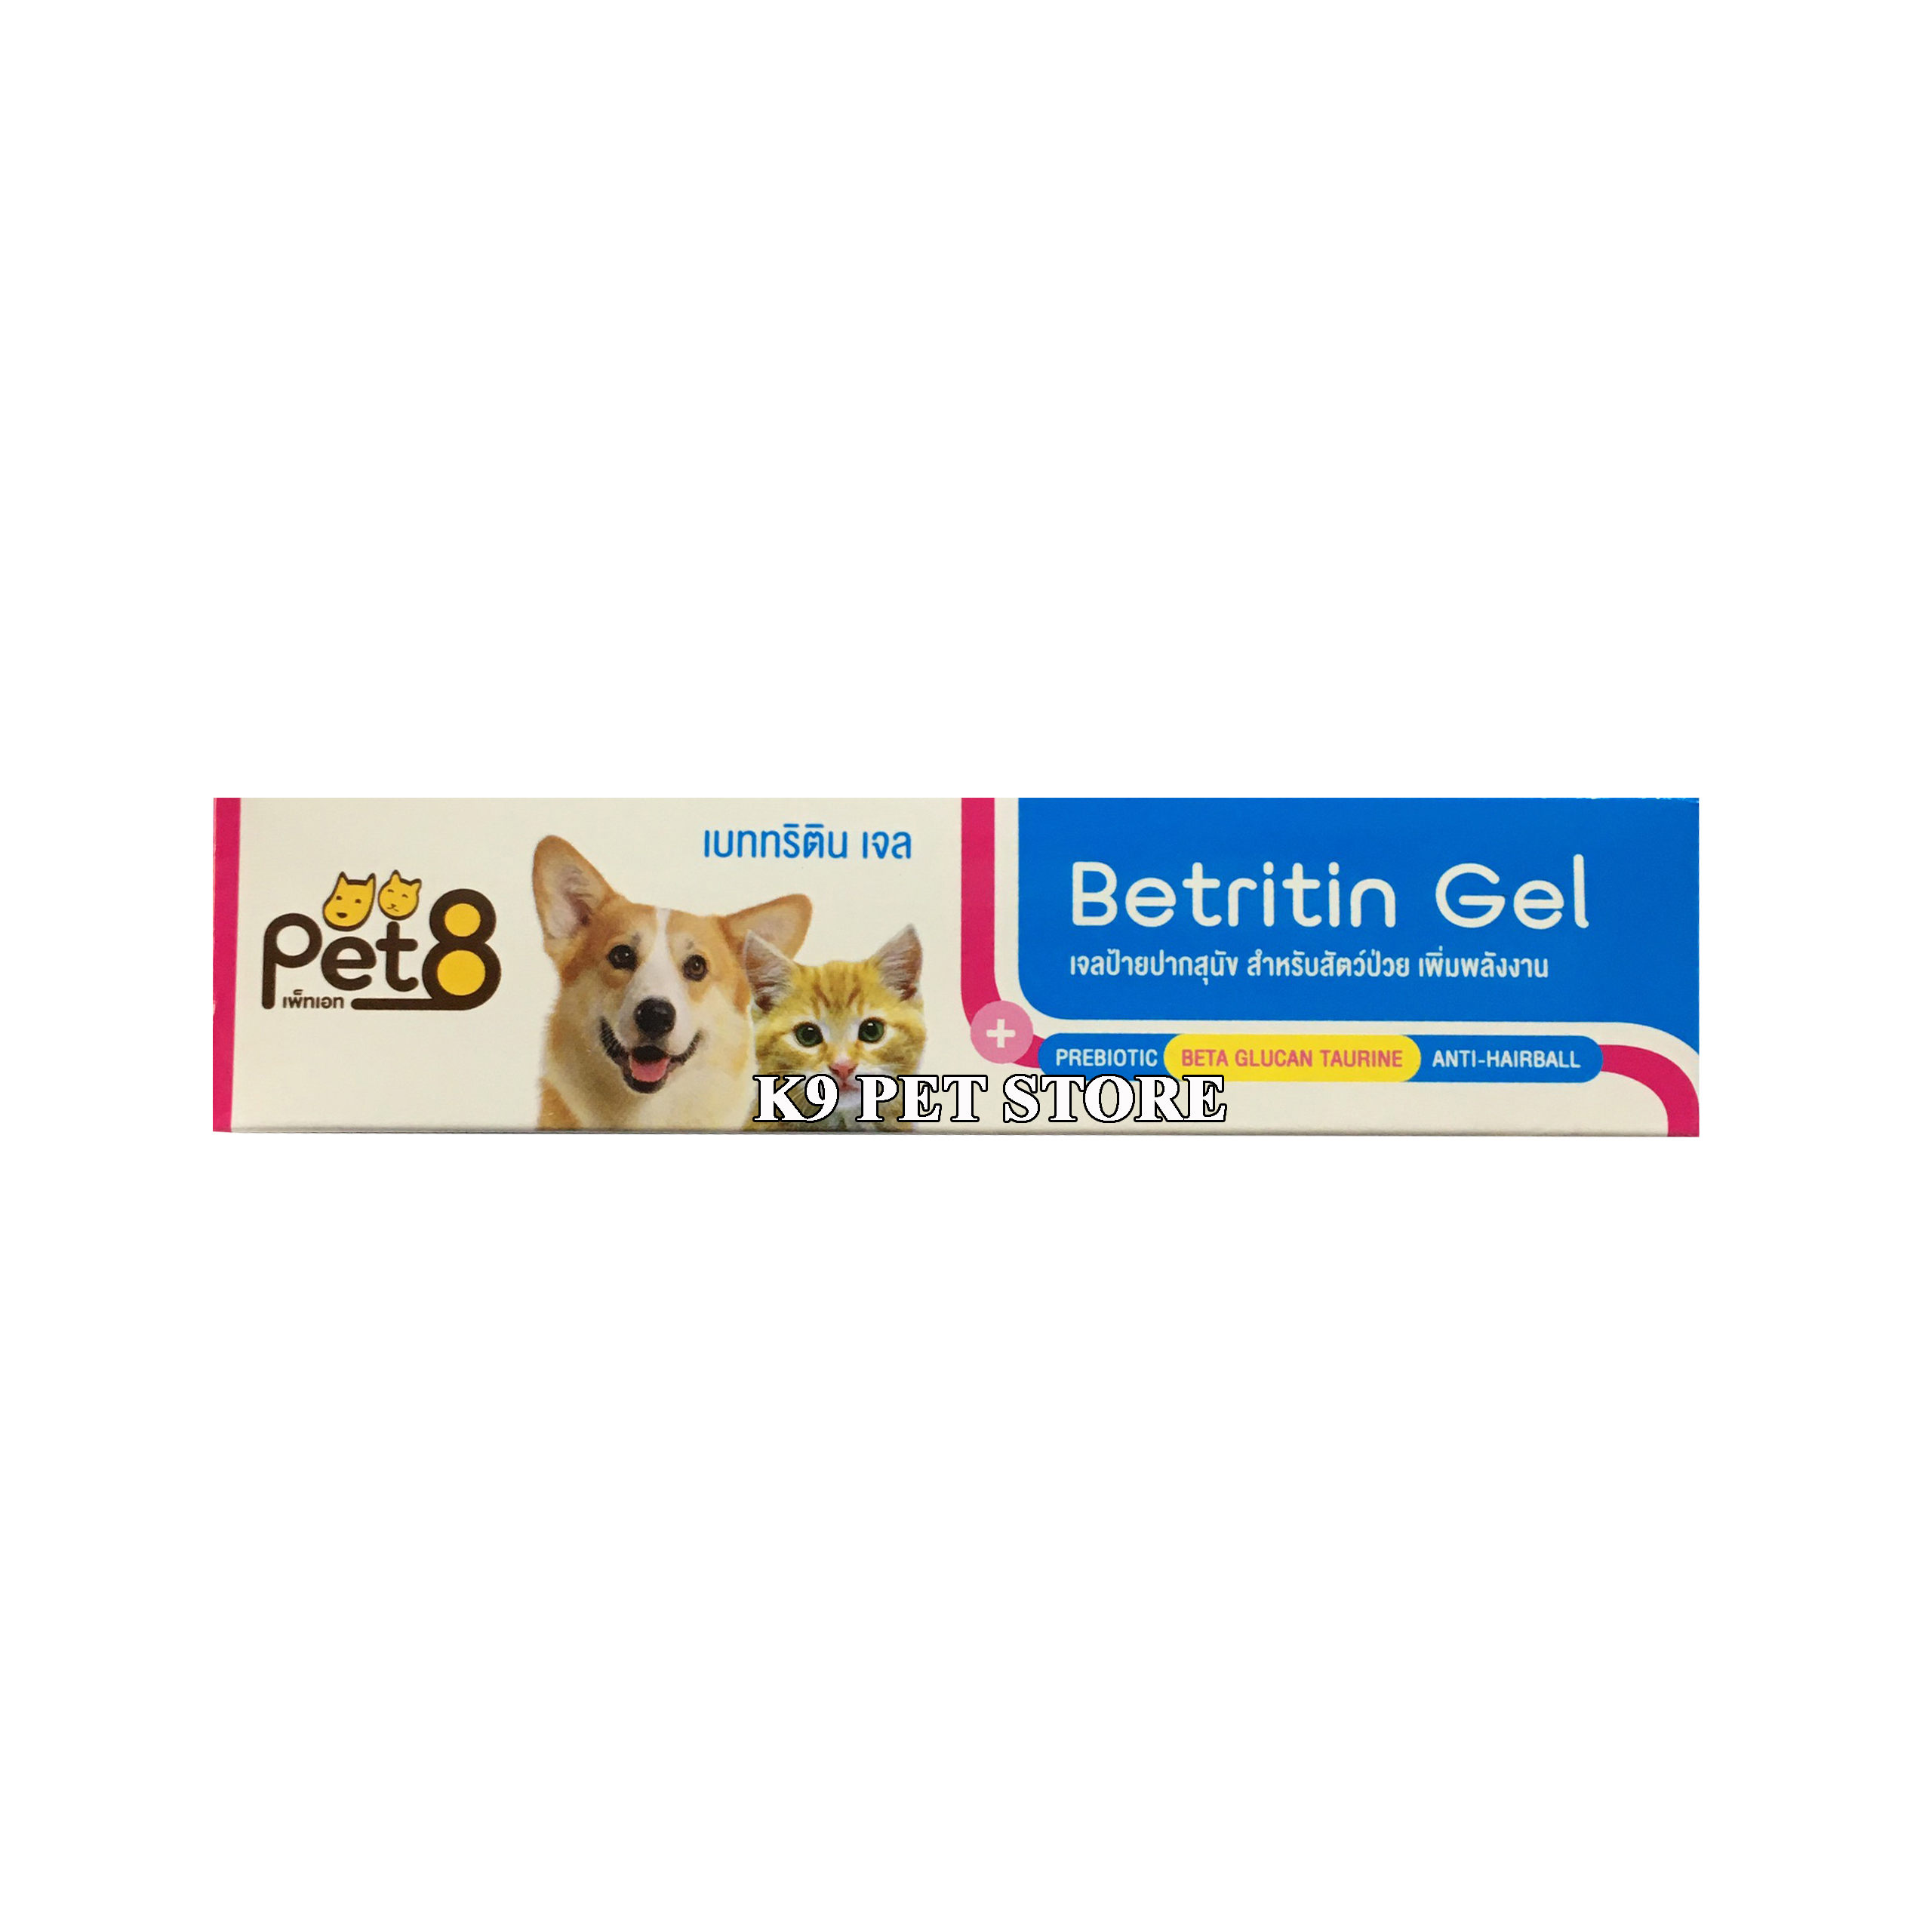 Gel dinh dưỡng Betritin Pet8 - bổ sung dinh dưỡng và trị búi lông 30g